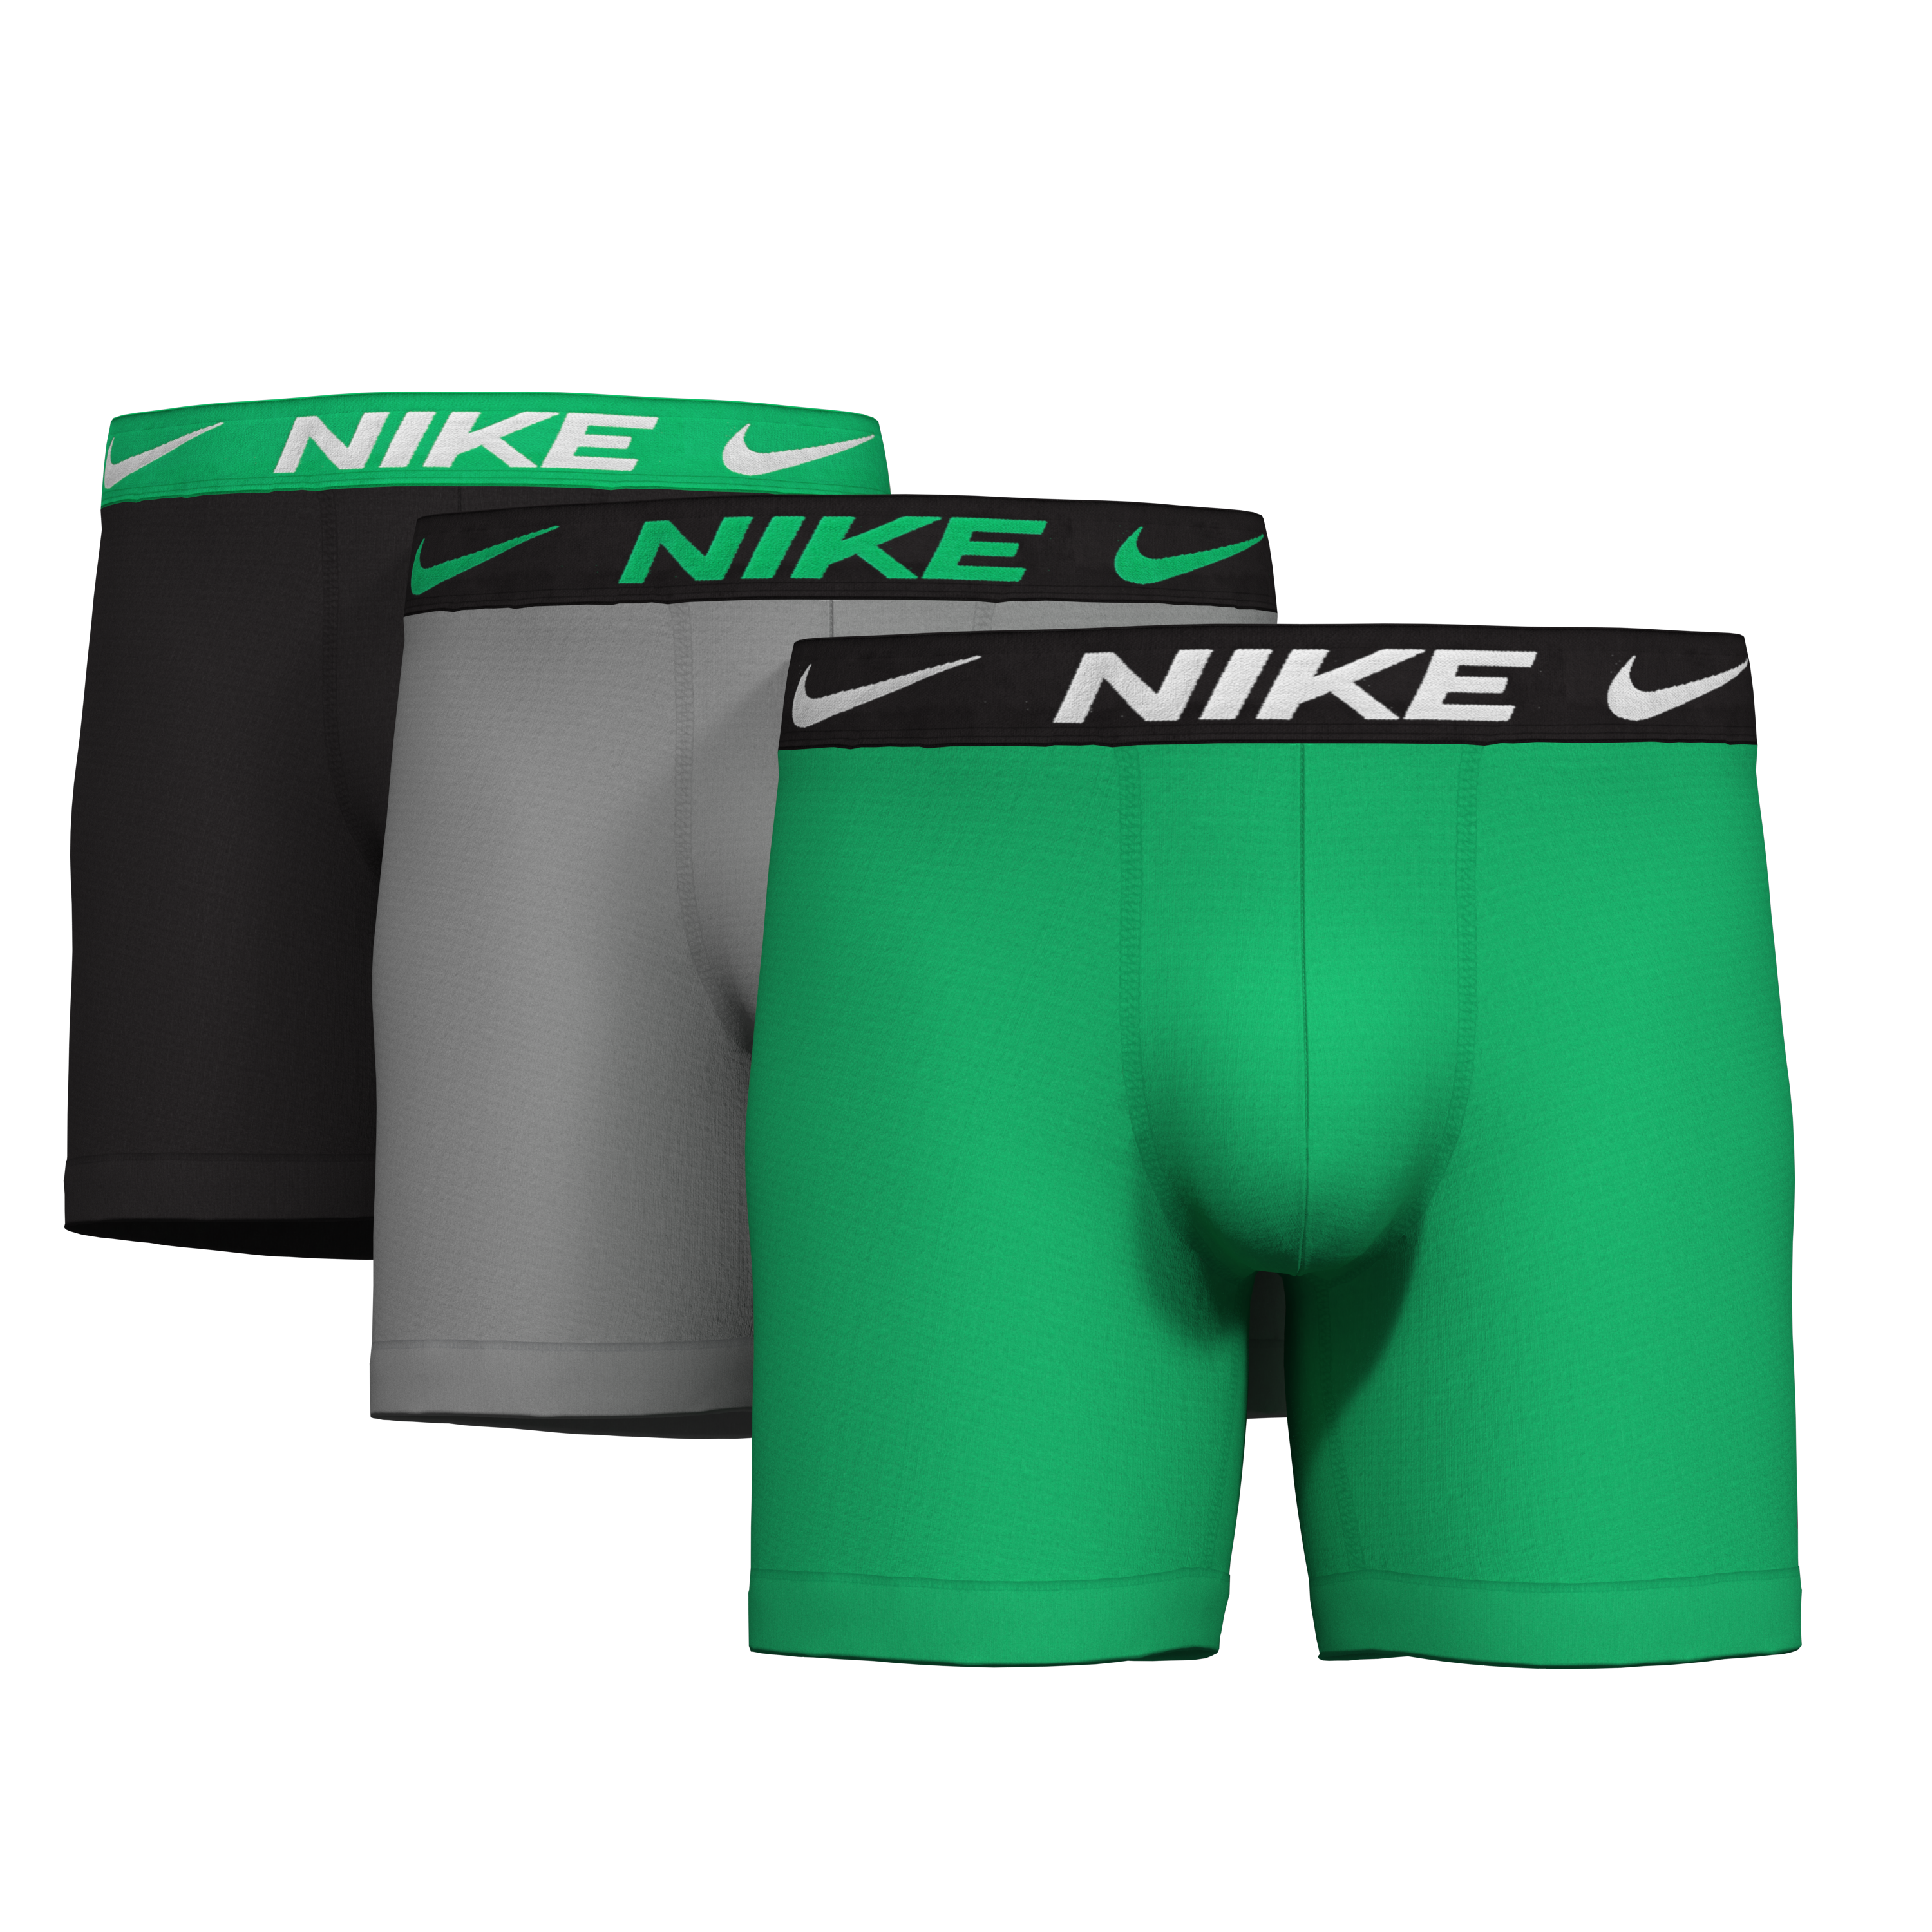 Men's Nike KE1214 Essential Micro Slim Fit Boxer - 3 Pack